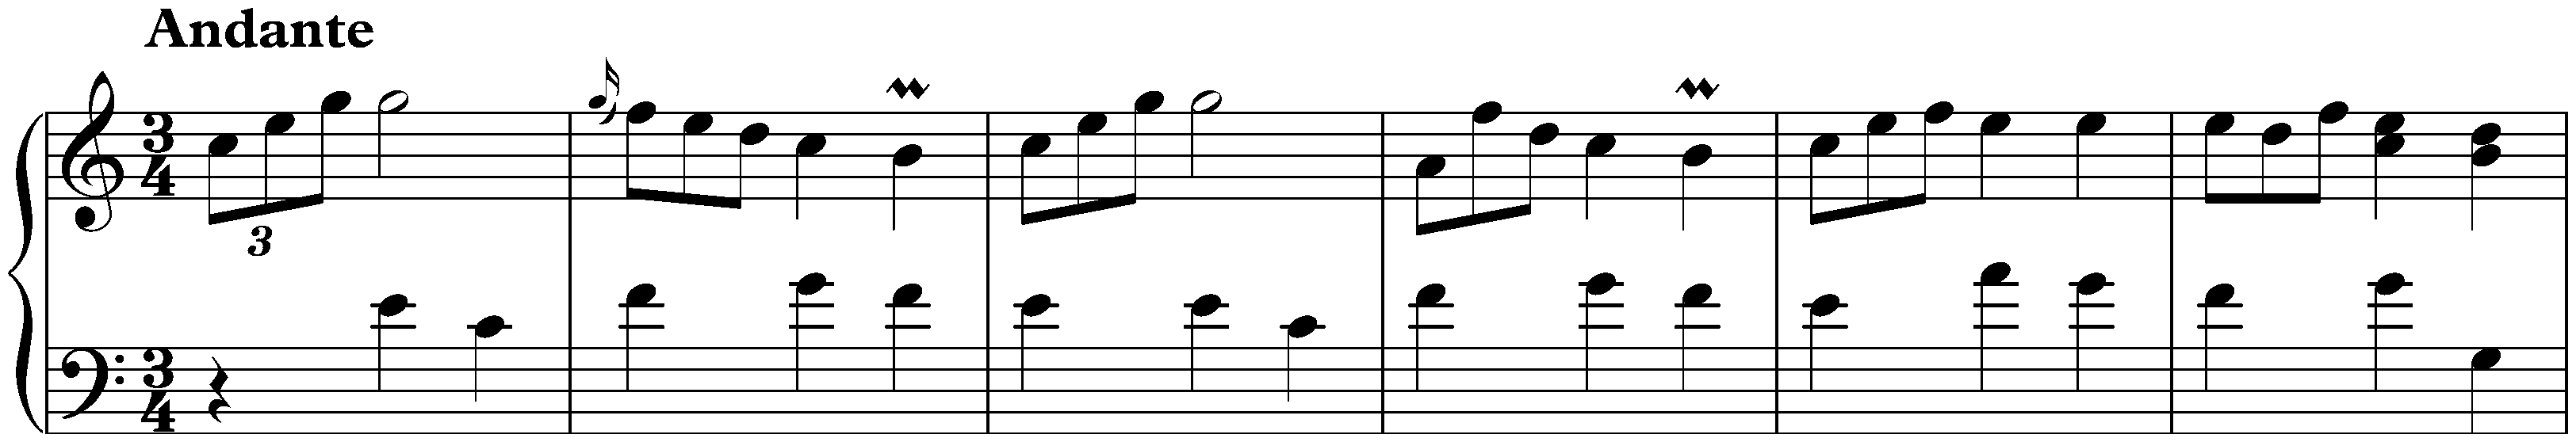 Sonata in C major, K. 165